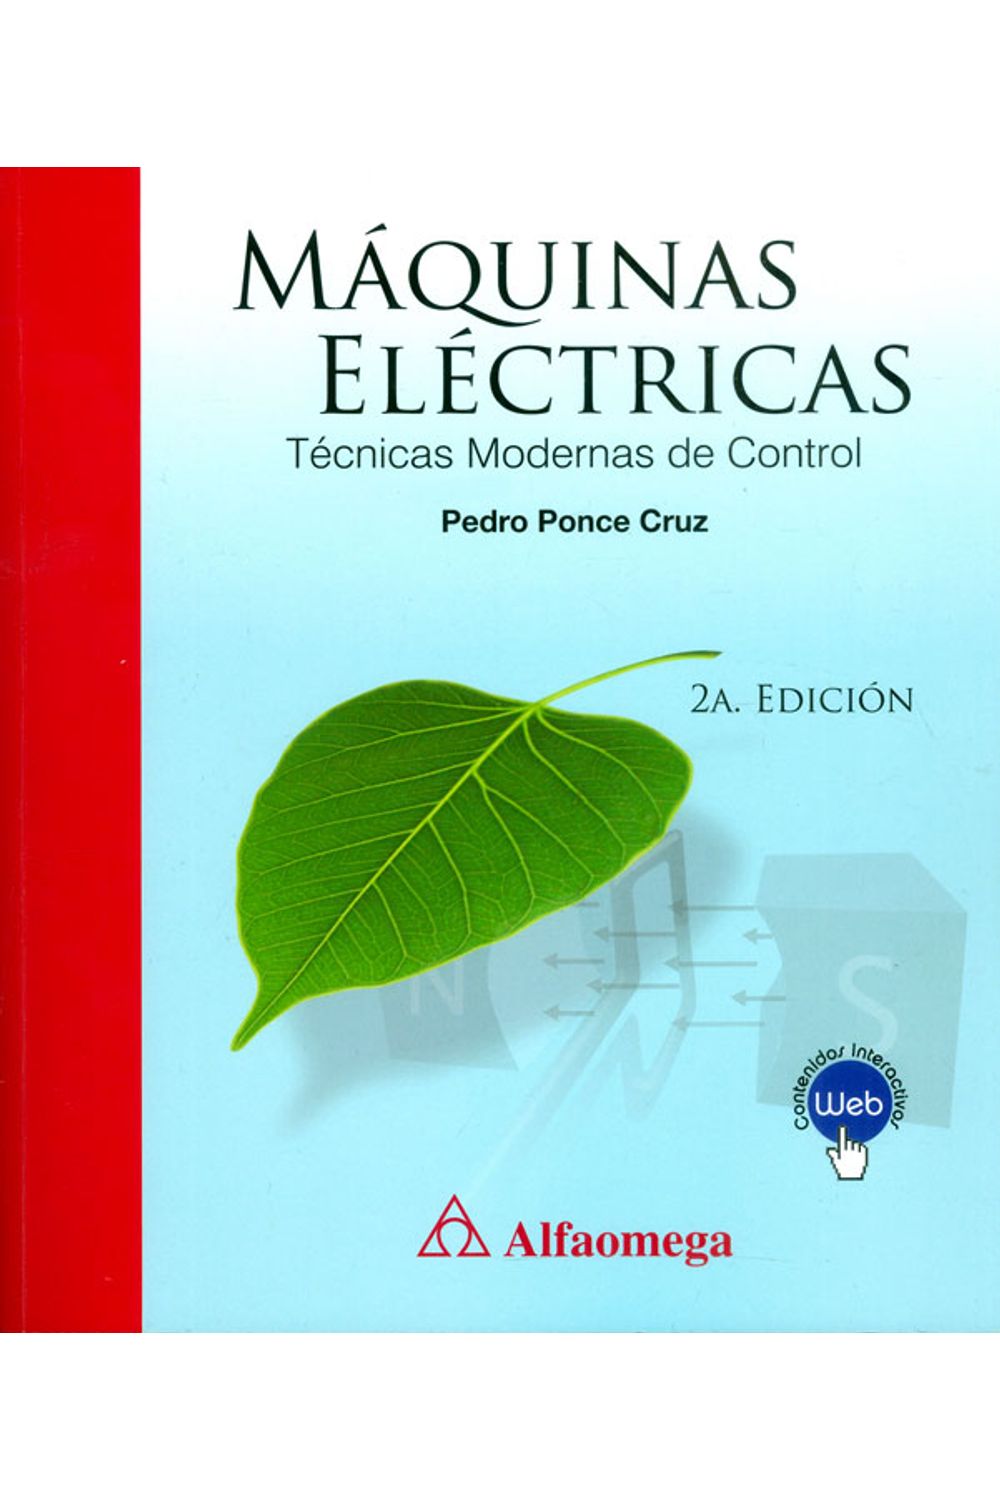 maquinas-electricas-9789587782615-alfa